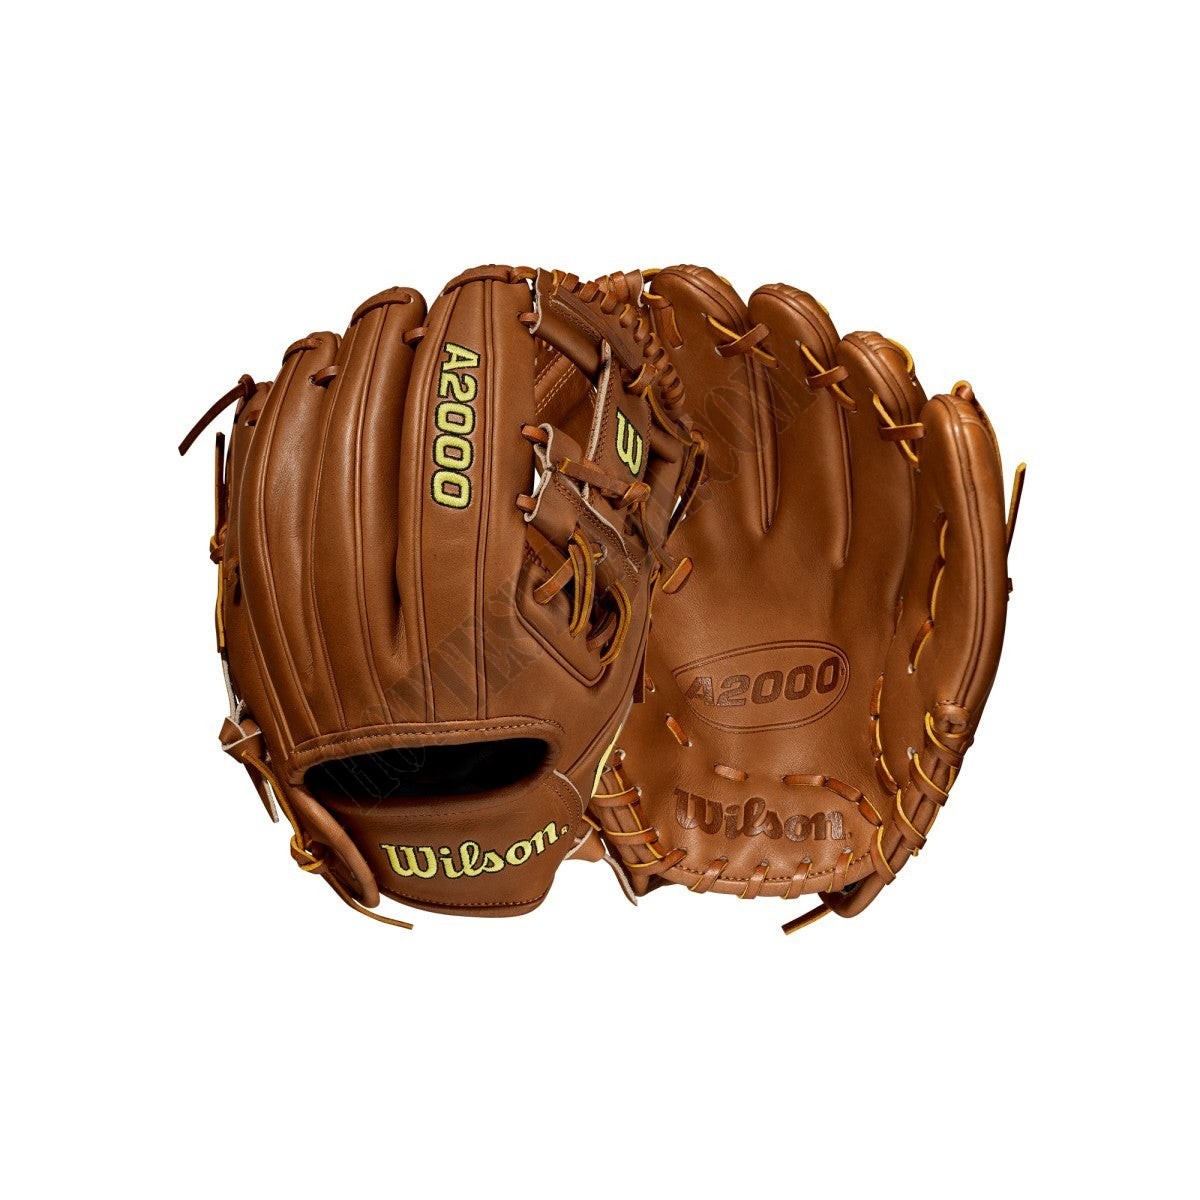 2021 A2000 DP15 11.5" Infield Baseball Glove ● Wilson Promotions - 2021 A2000 DP15 11.5" Infield Baseball Glove ● Wilson Promotions